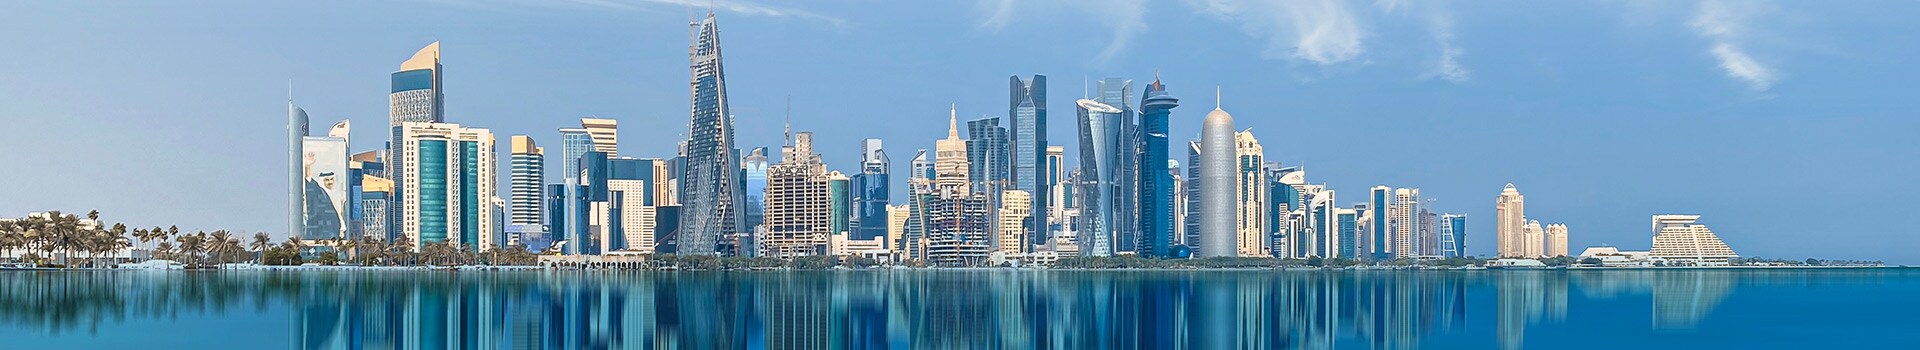 Frankfurt - Doha